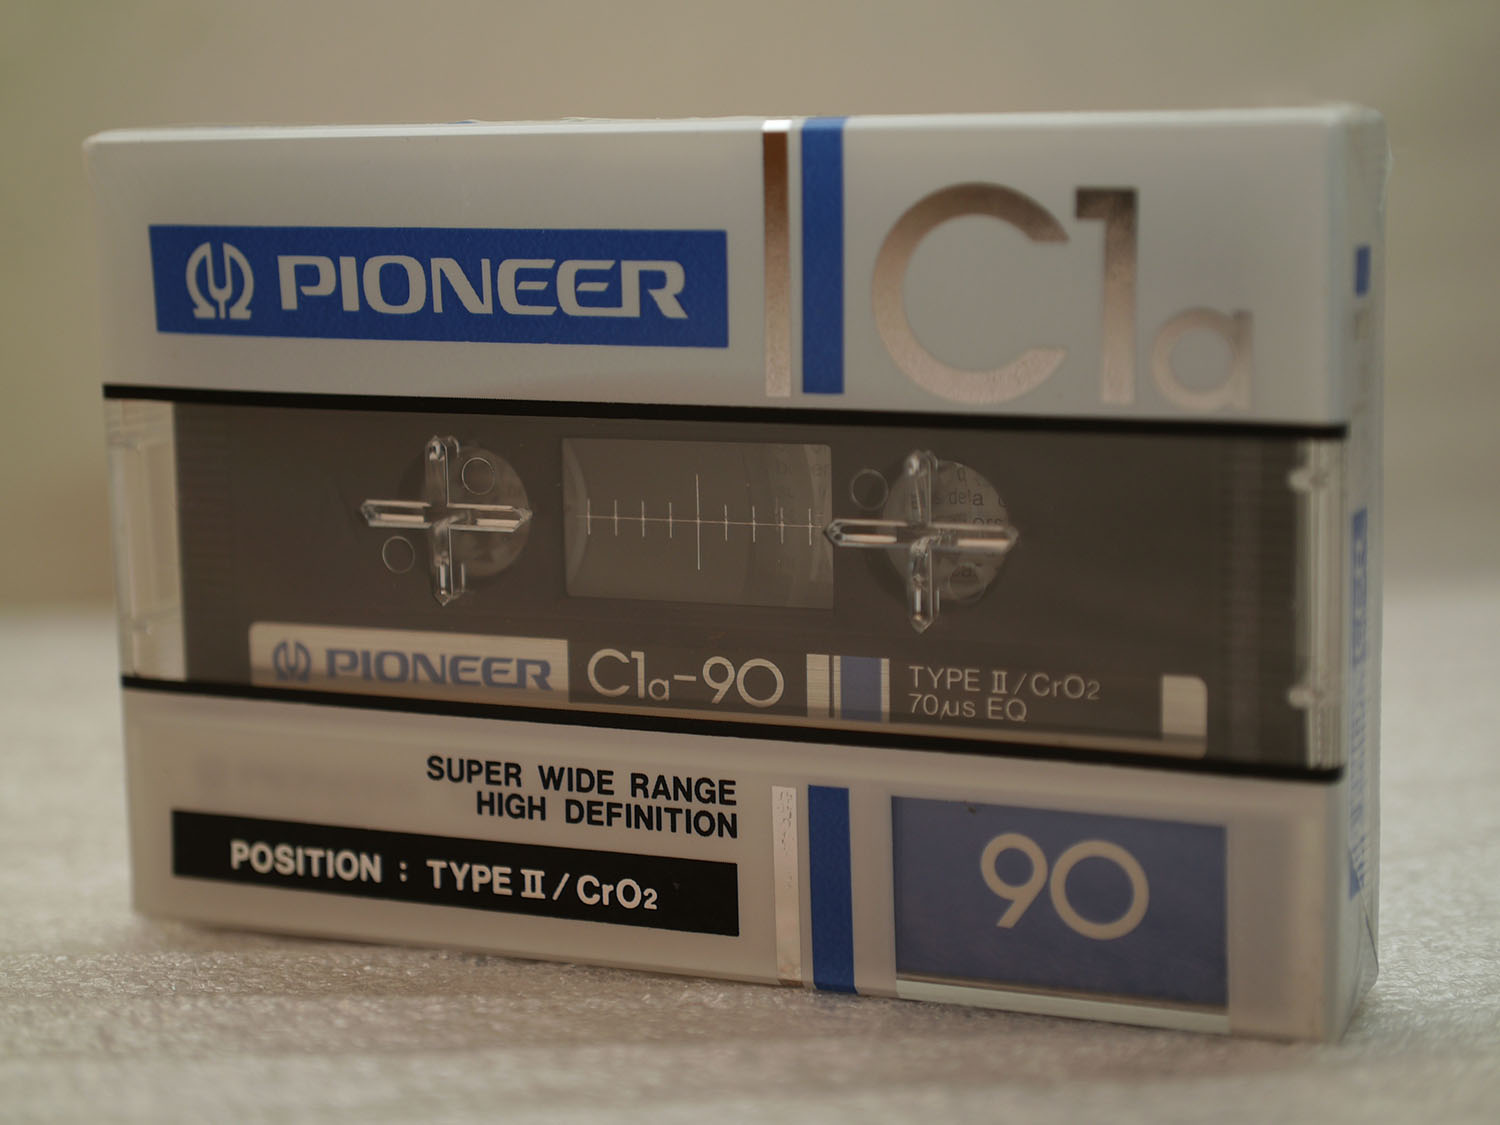 Pioneer c1a 90 01